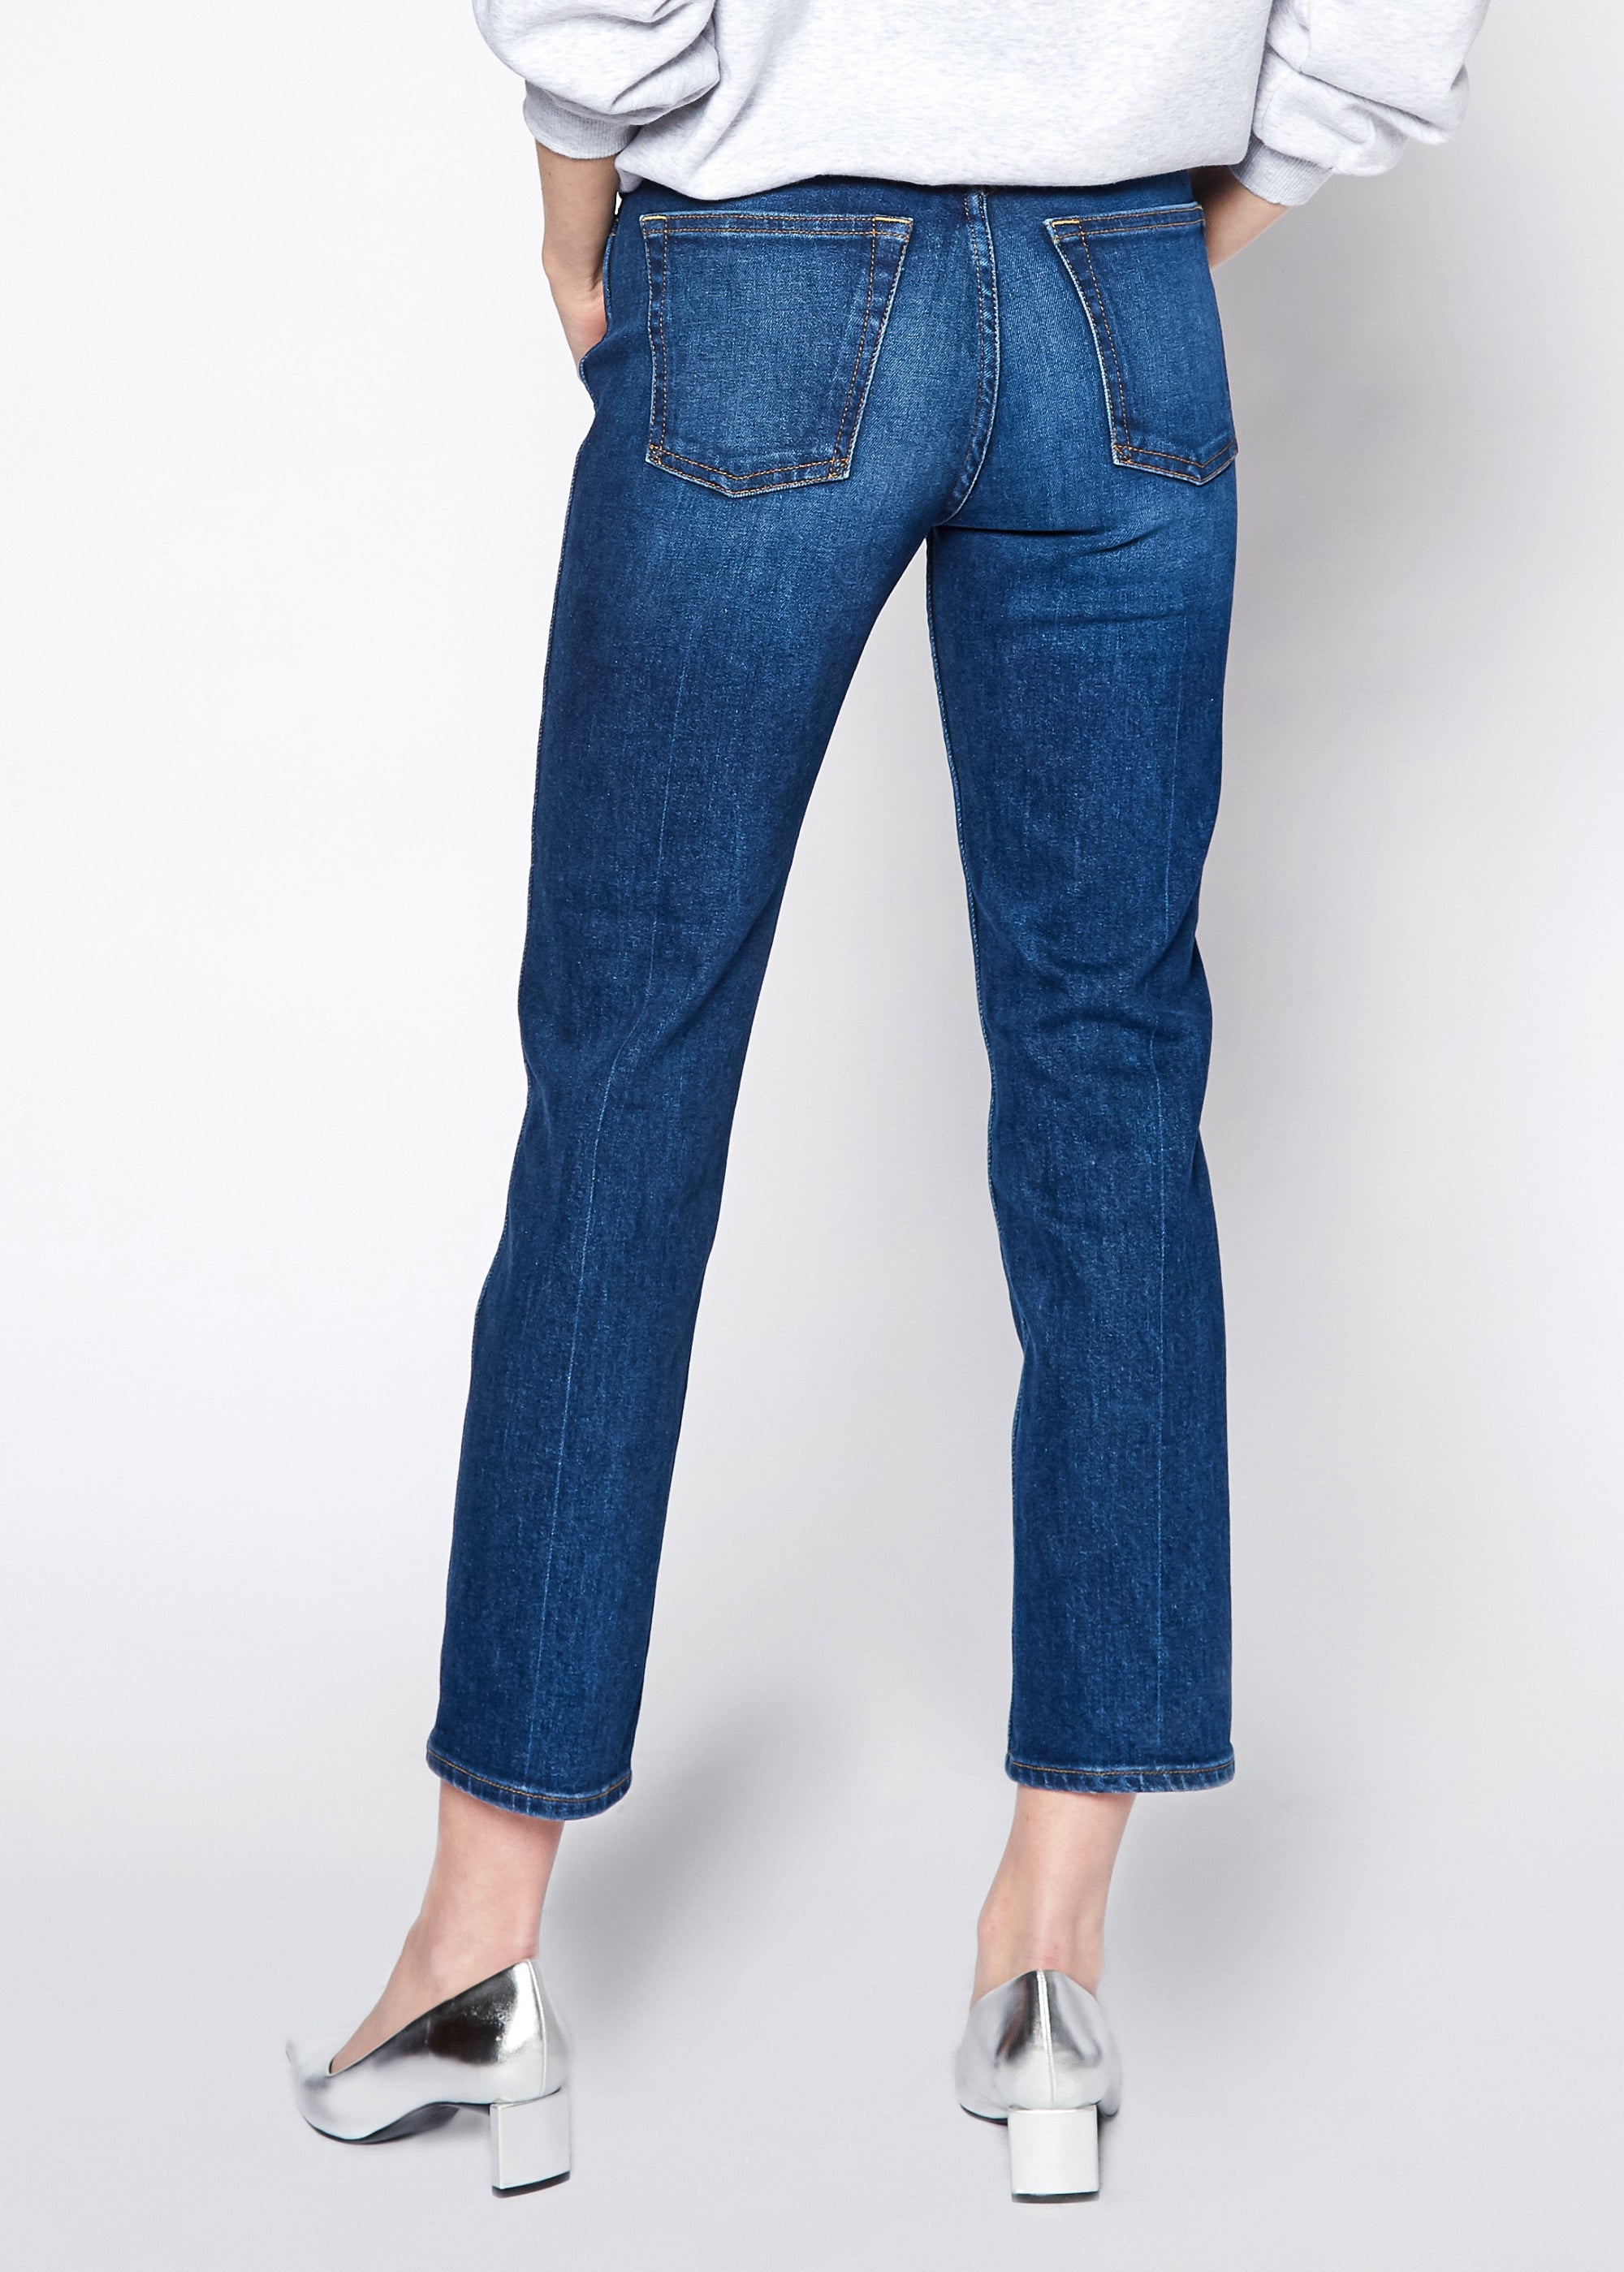 Eve Slim Straight Jeans In Delaware - Noend Denim